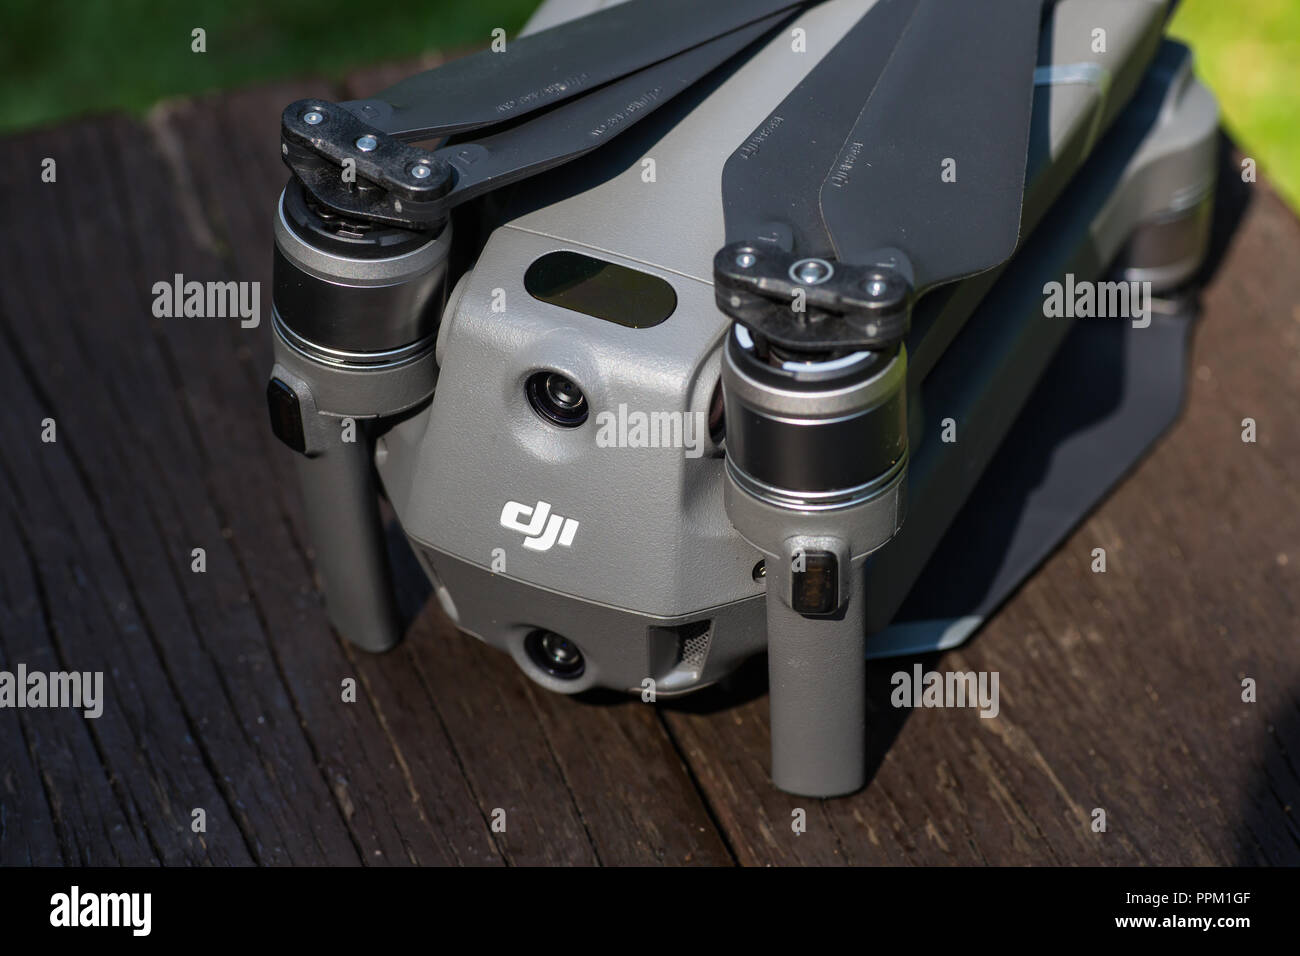 Rear view of mavic 2 pro drone design Stock Photo